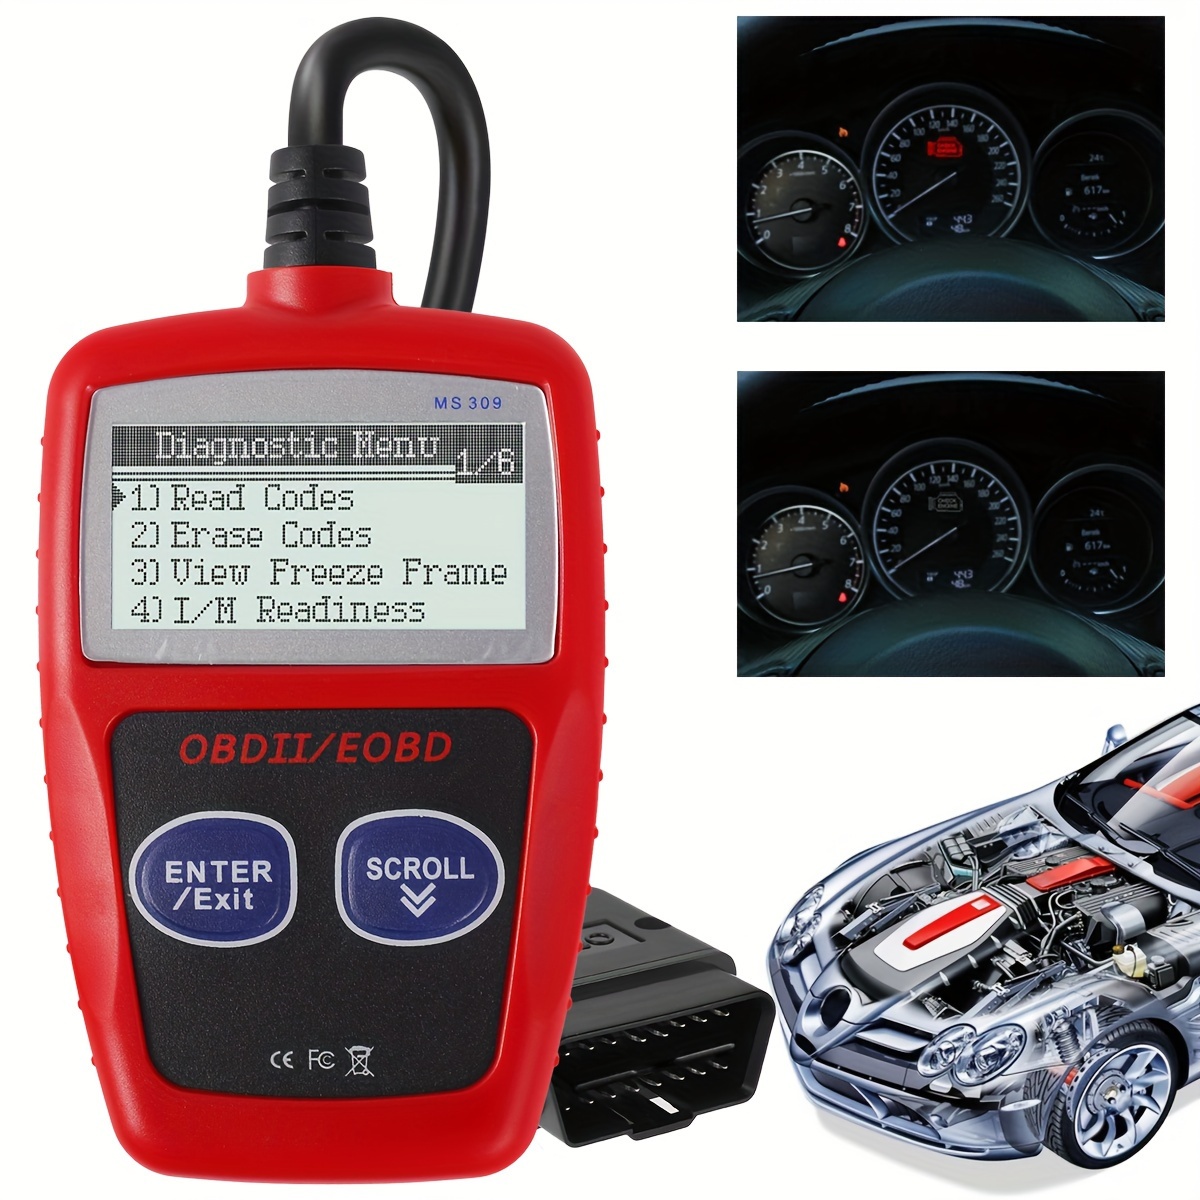 Car Scanner V309 OBD2-OBDII Diagnostic Tool Engine Fault Code